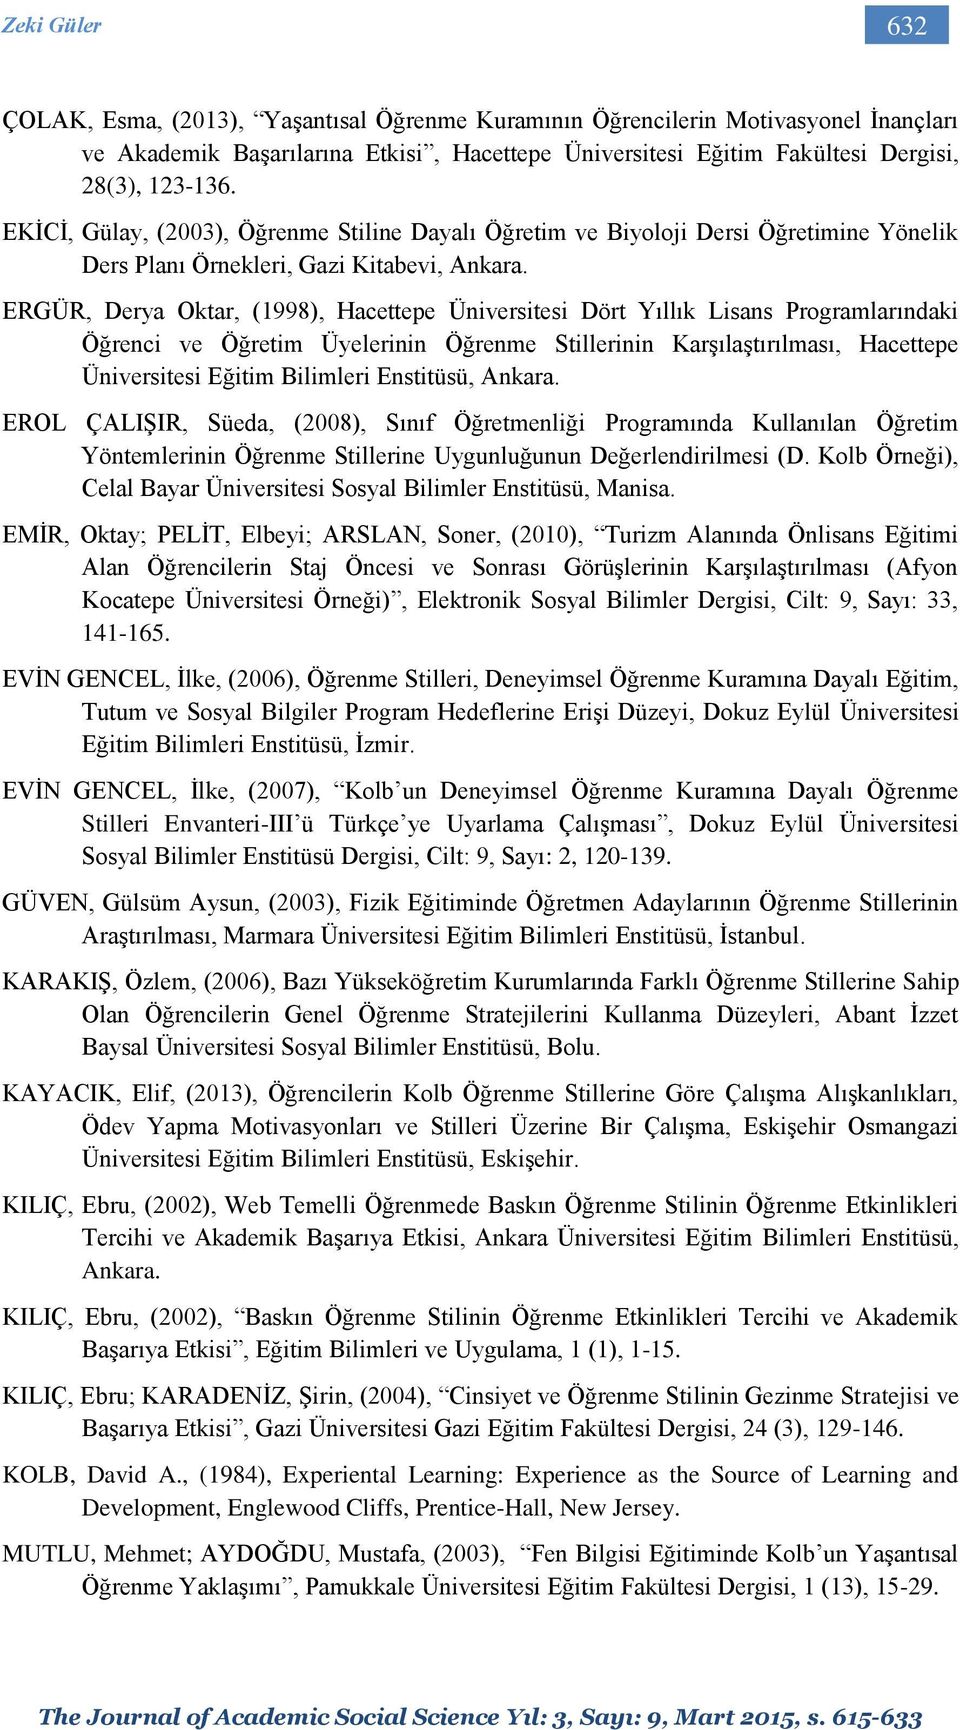 ERGÜR, Derya Oktar, (1998), Hacettepe Üniversitesi Dört Yıllık Lisans Programlarındaki Öğrenci ve Öğretim Üyelerinin Öğrenme Stillerinin Karşılaştırılması, Hacettepe Üniversitesi Eğitim Bilimleri